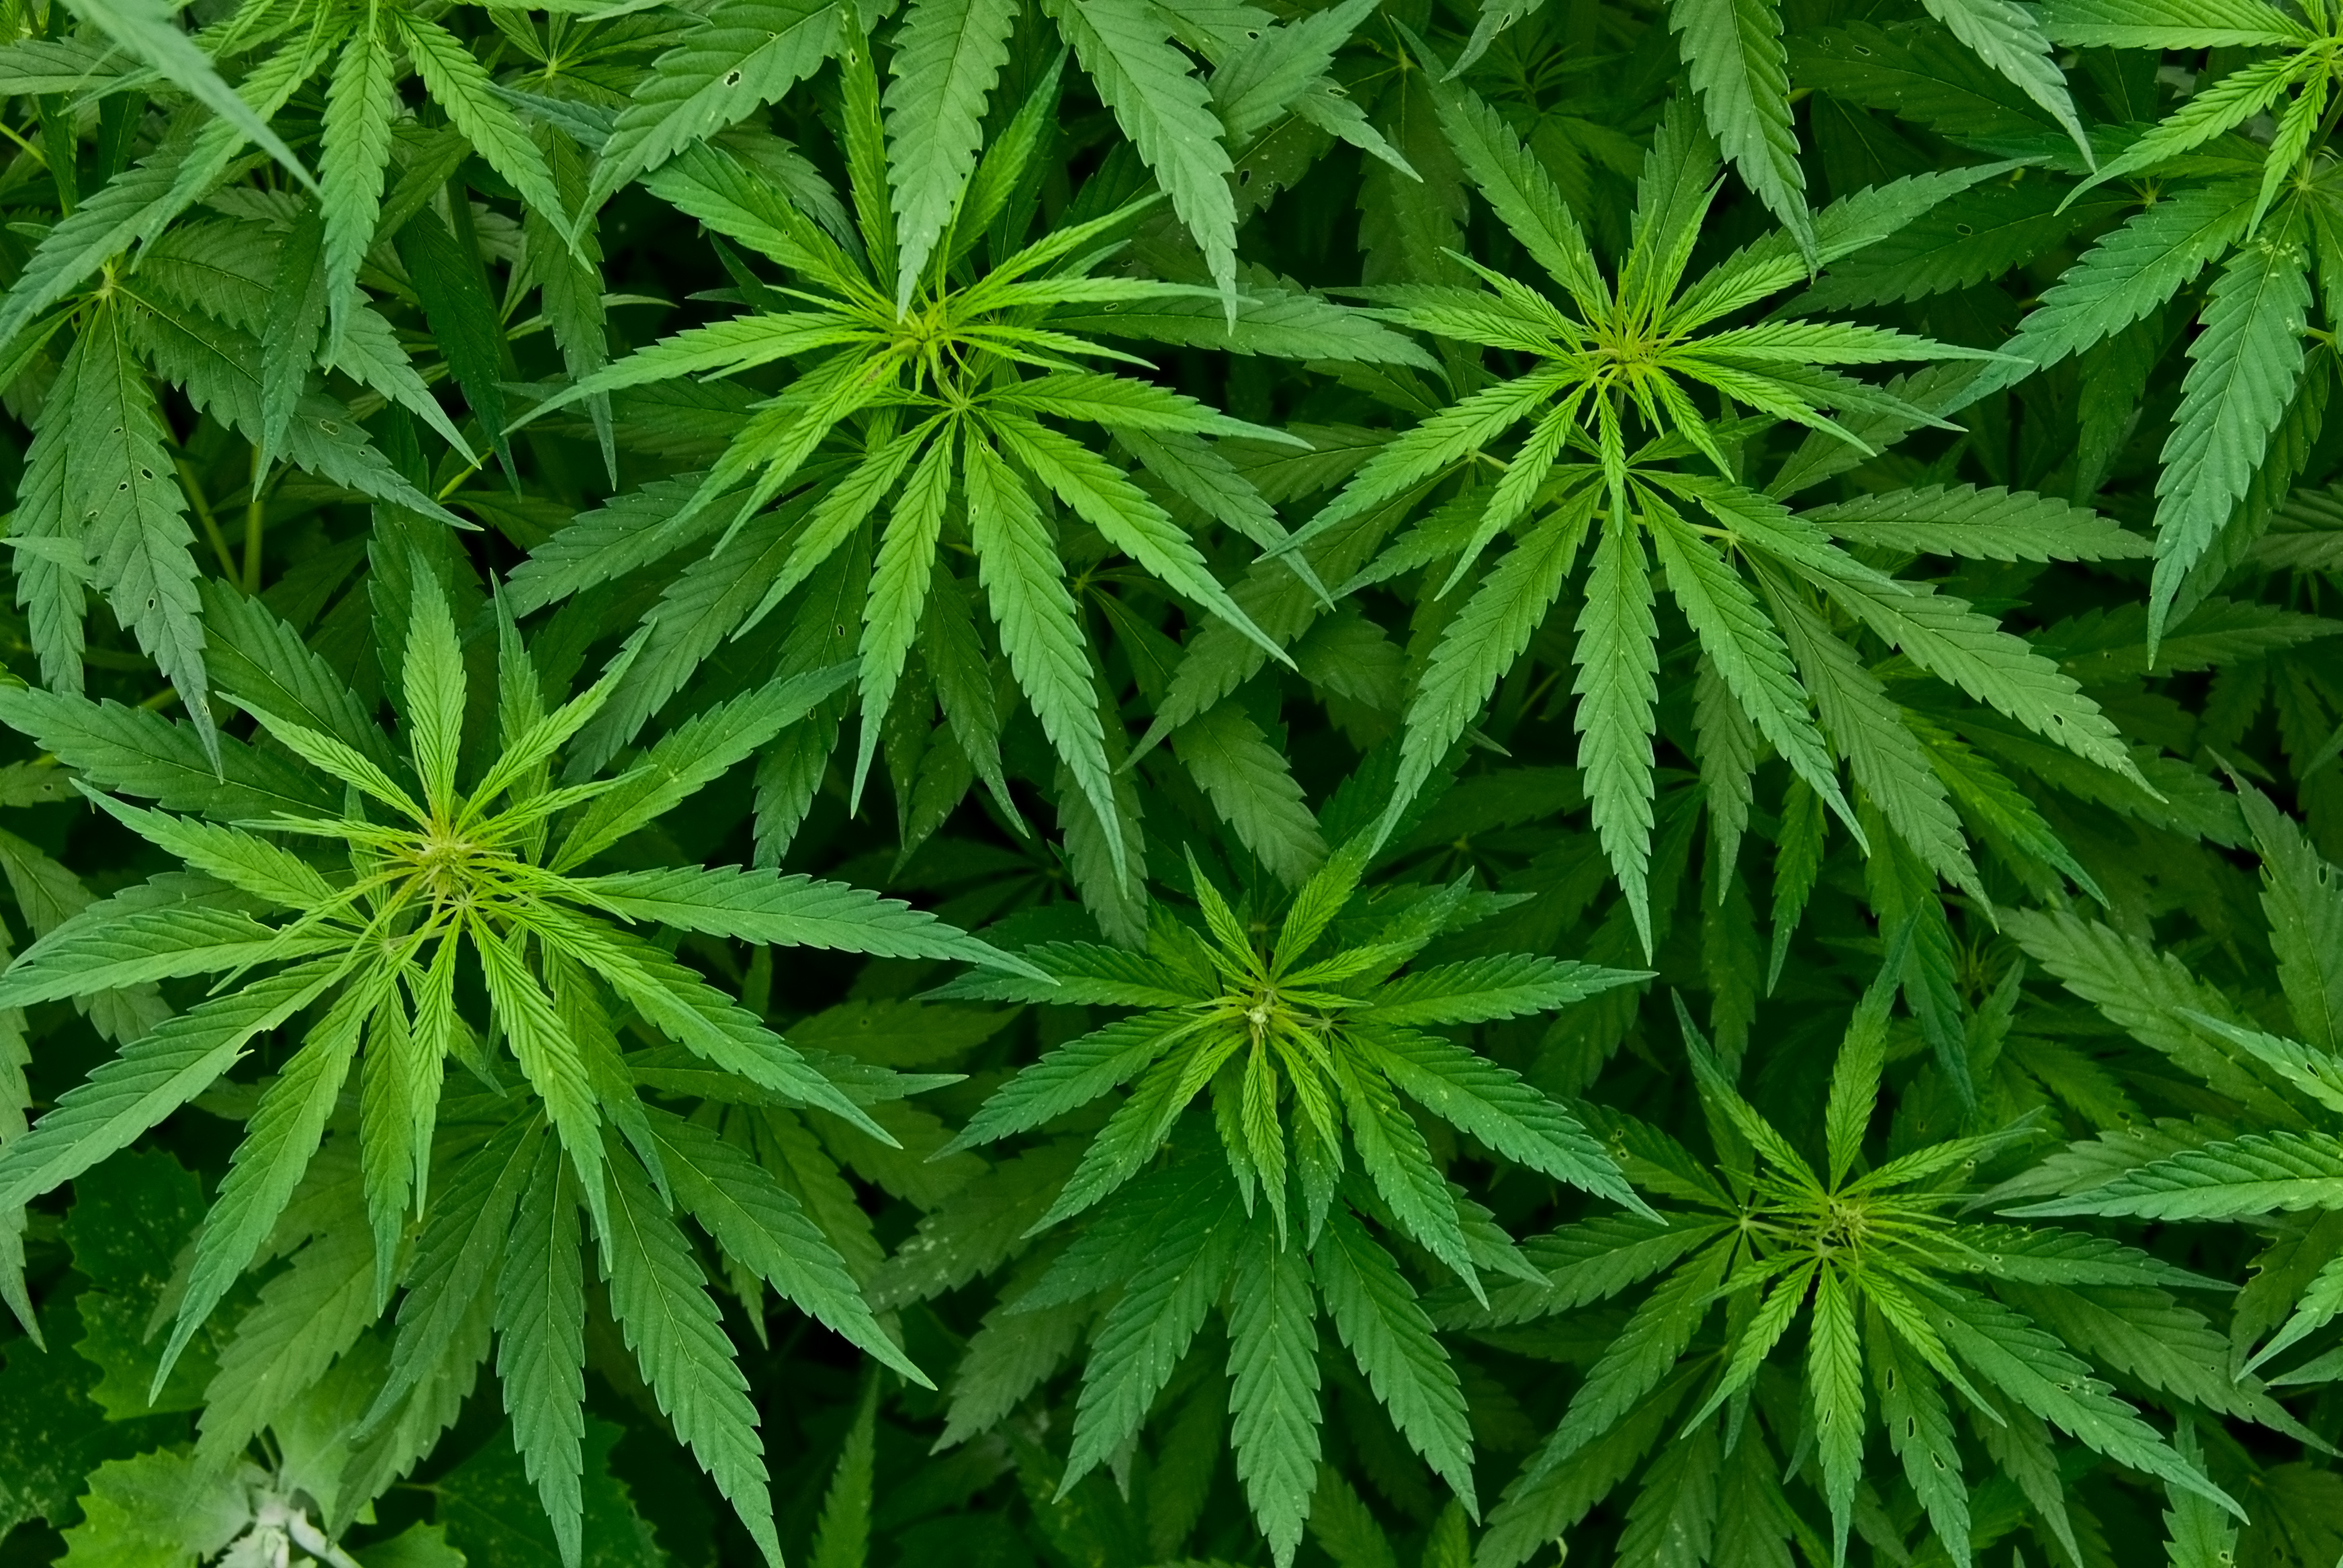 Abbildung von mehreren Marihuana-Pflanzen.